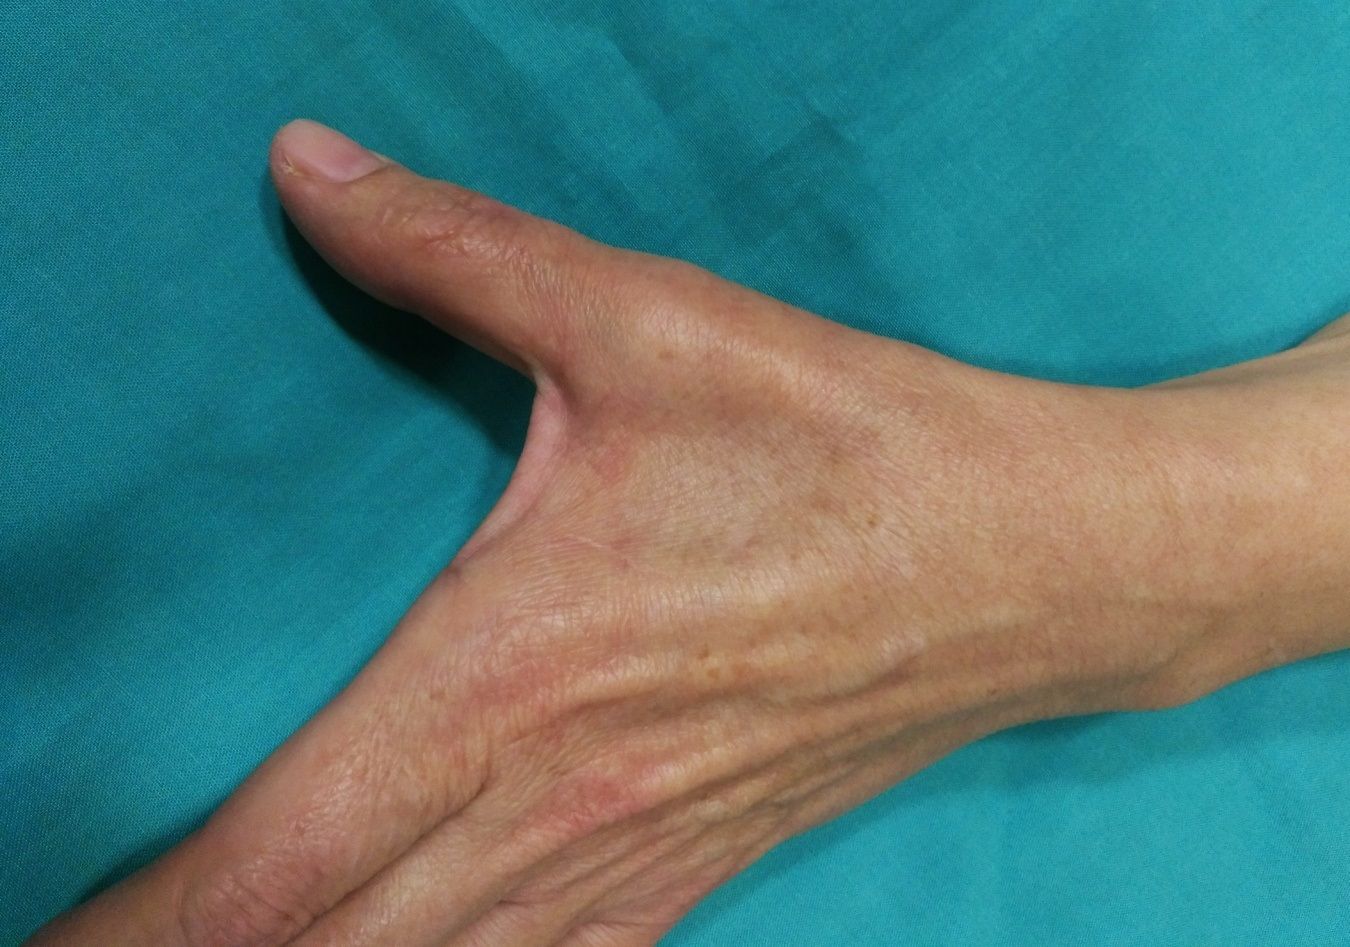 El Covid agrava "severamente" el síndrome del túnel carpiano y otros nervios de la mano